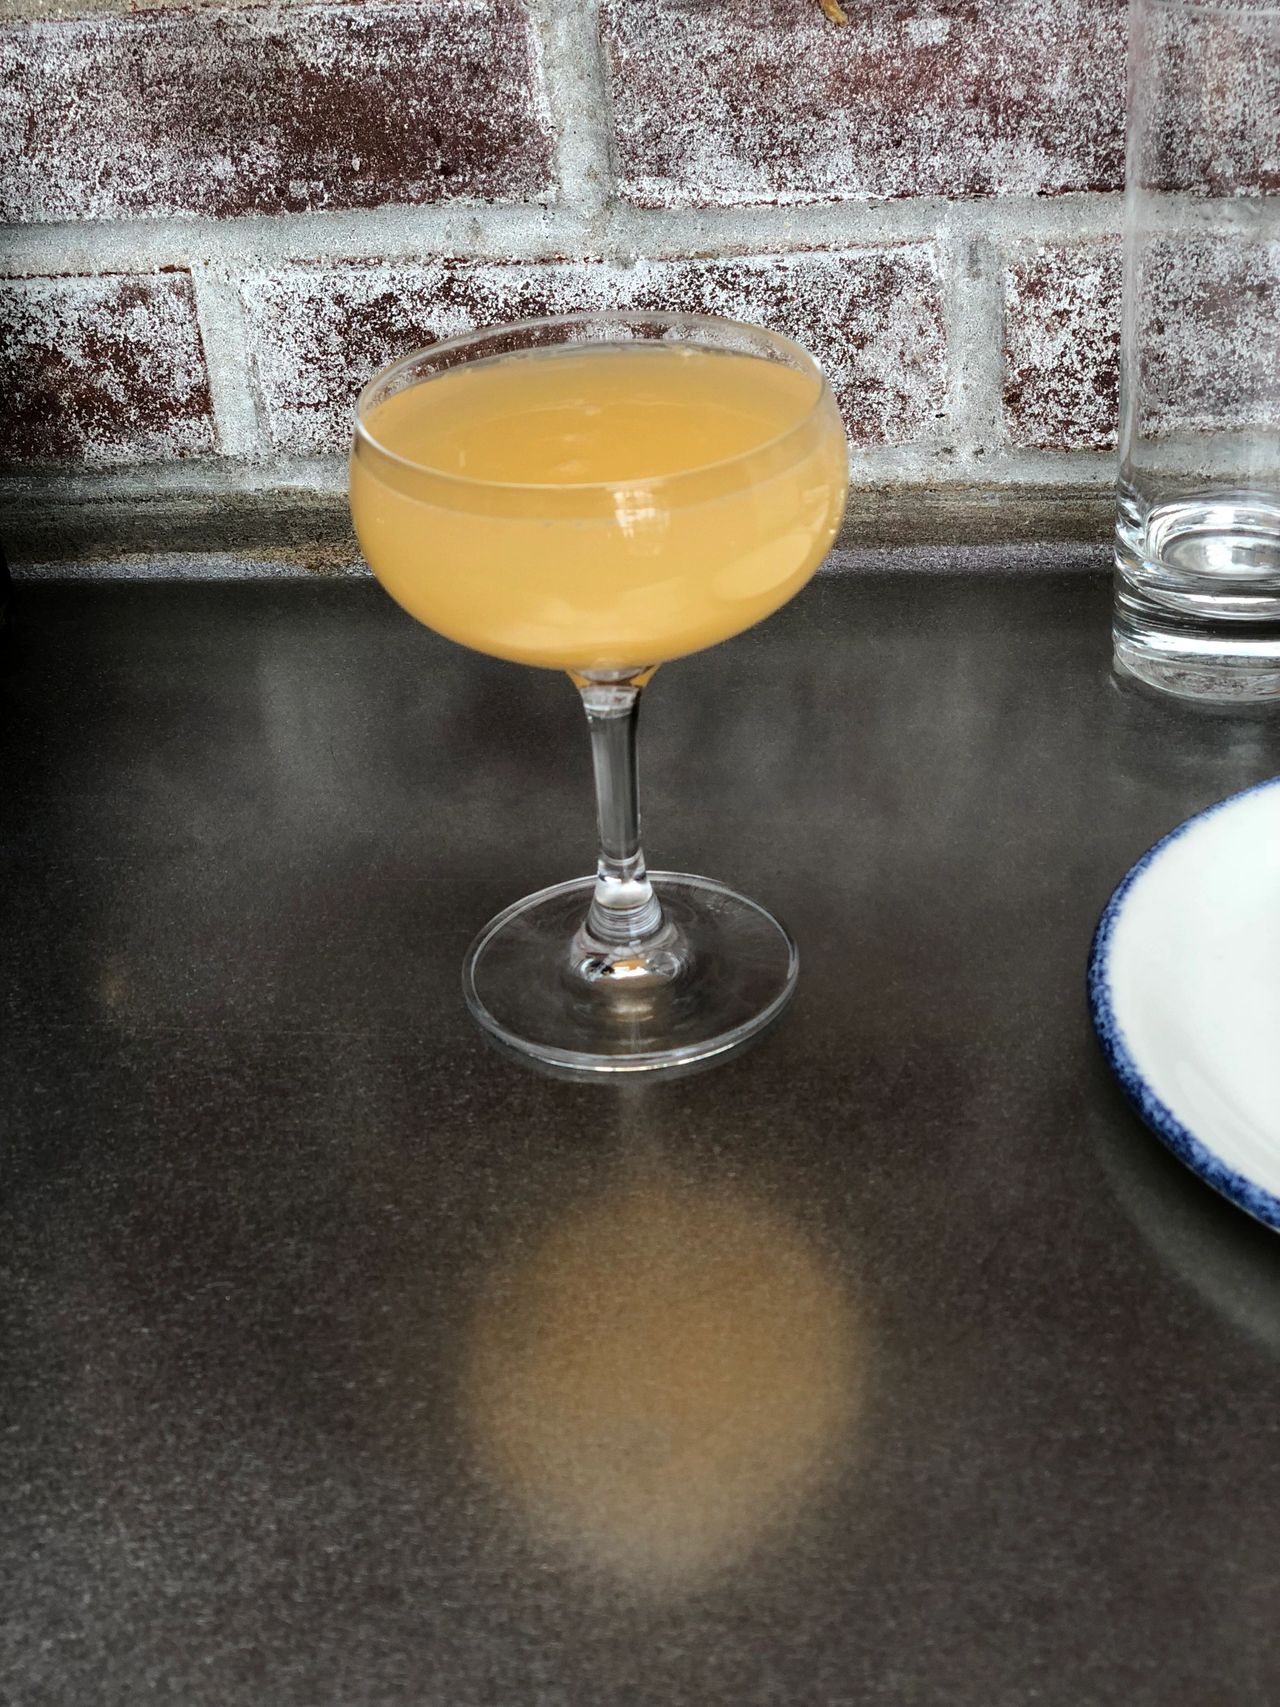 A refreshing mimosa at Cindy's